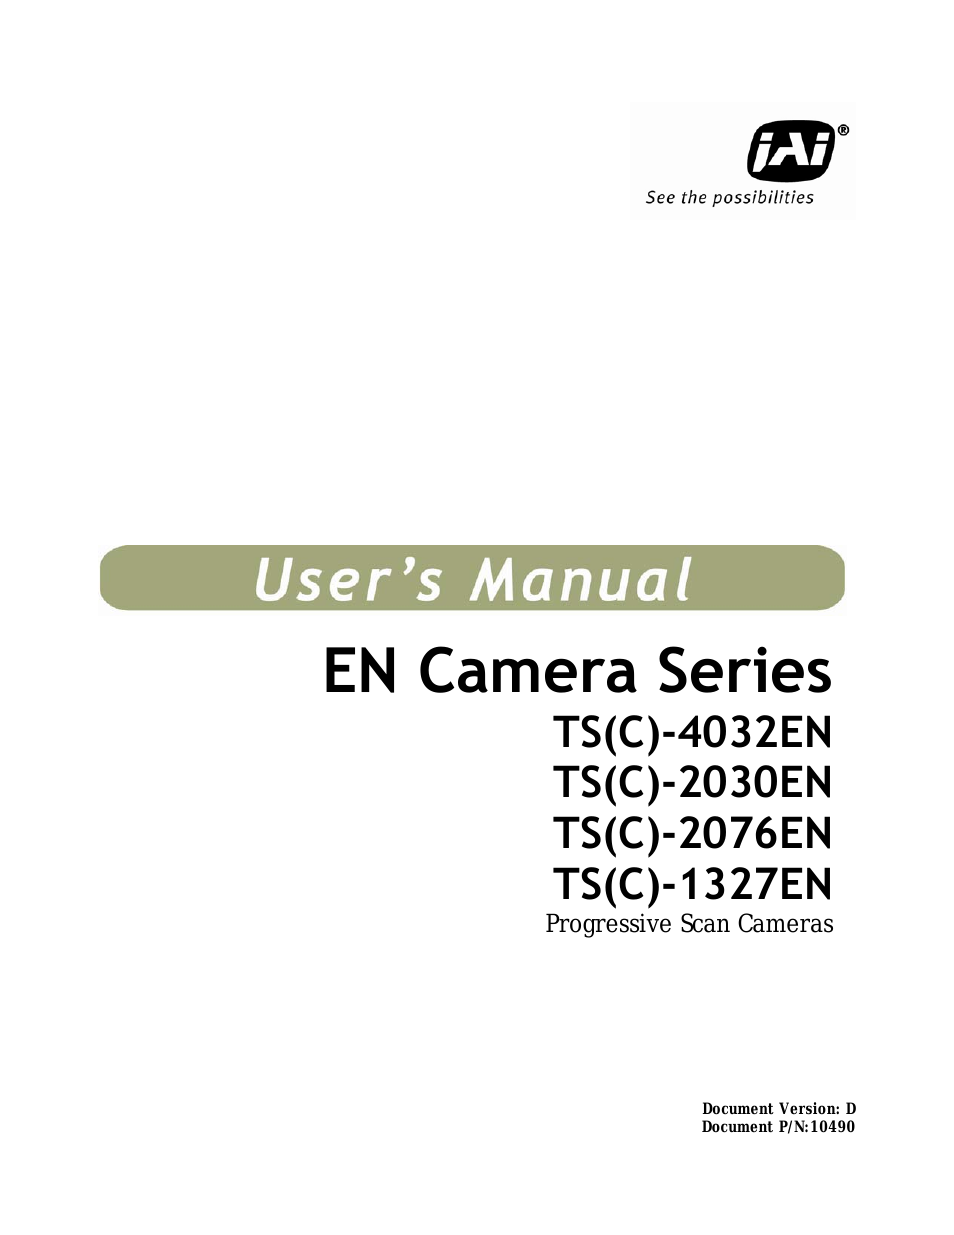 EN Series Cameras TS(C)-2030EN (Page 1)